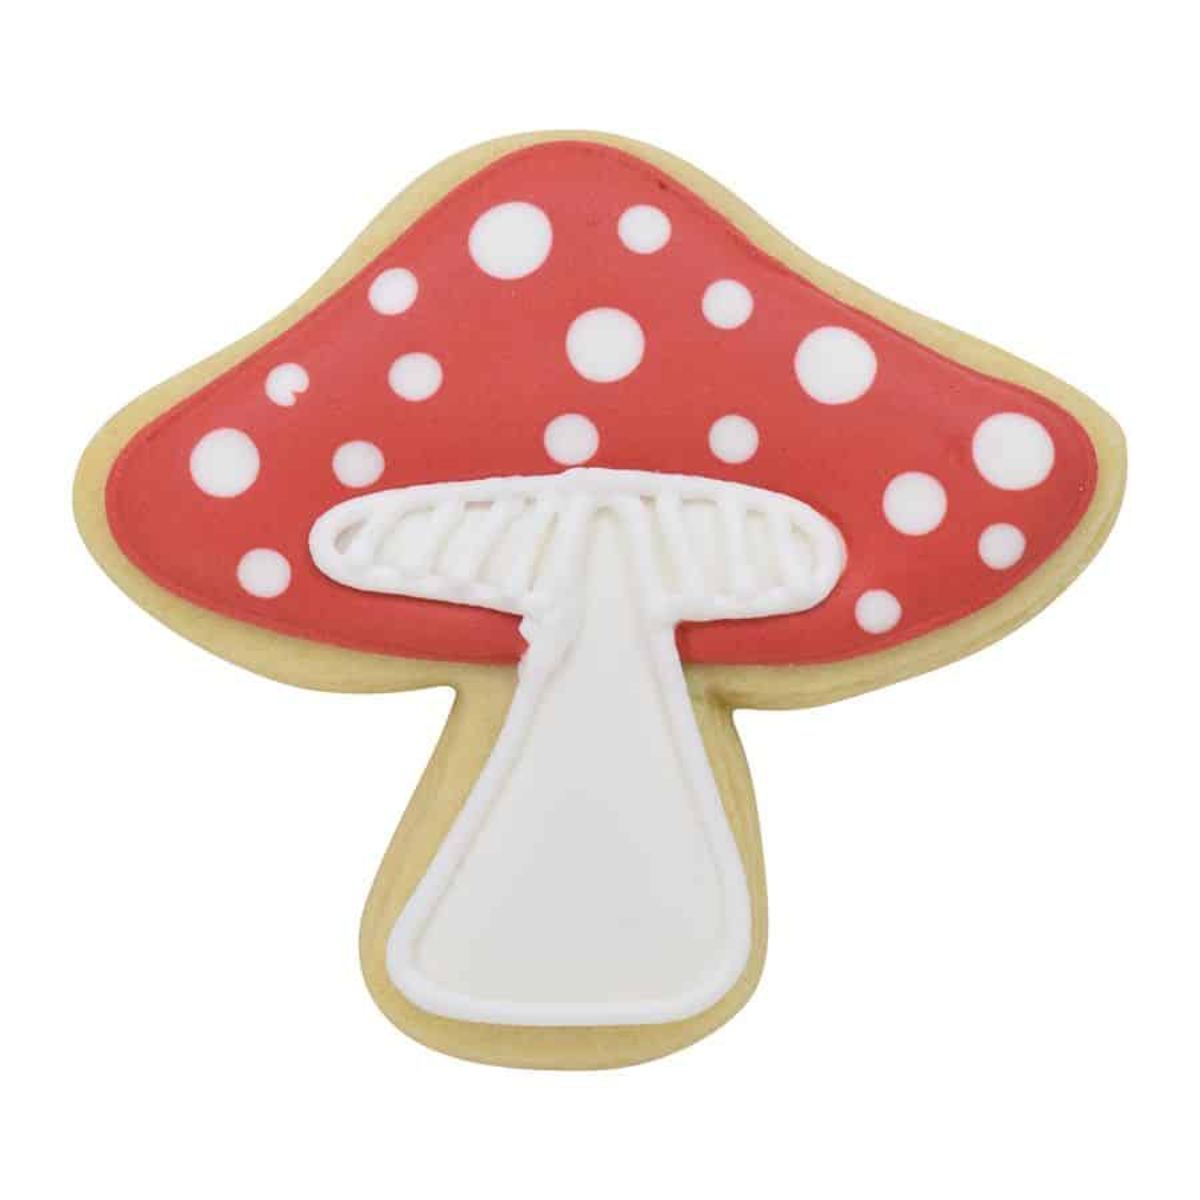 R&M Mushroom Cookie Cutter 3.75"